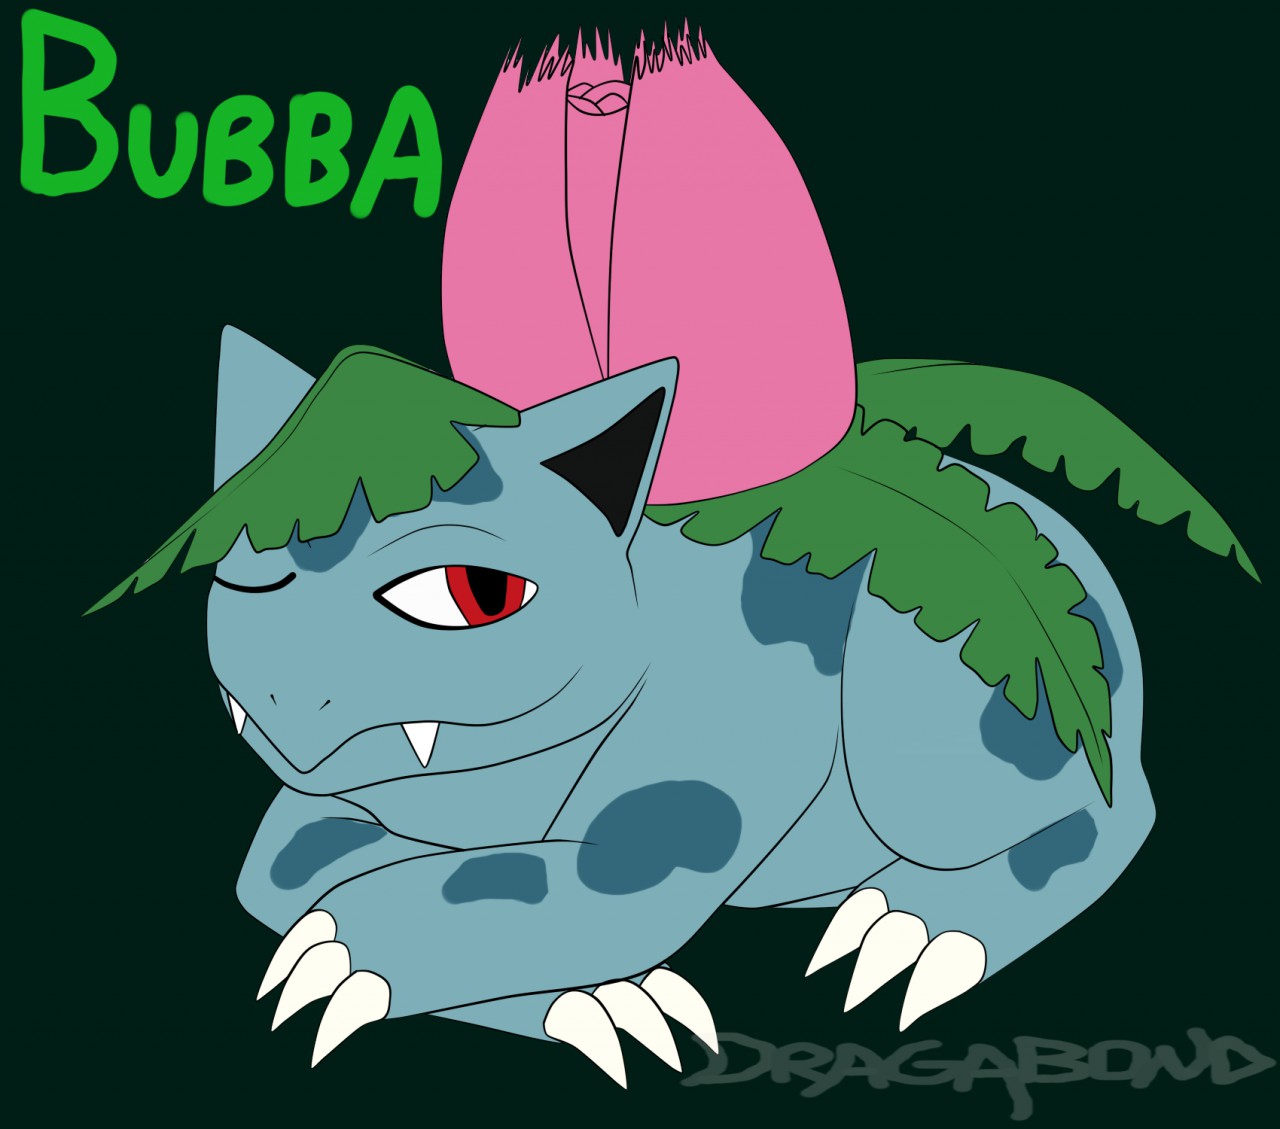 Bubbasaur